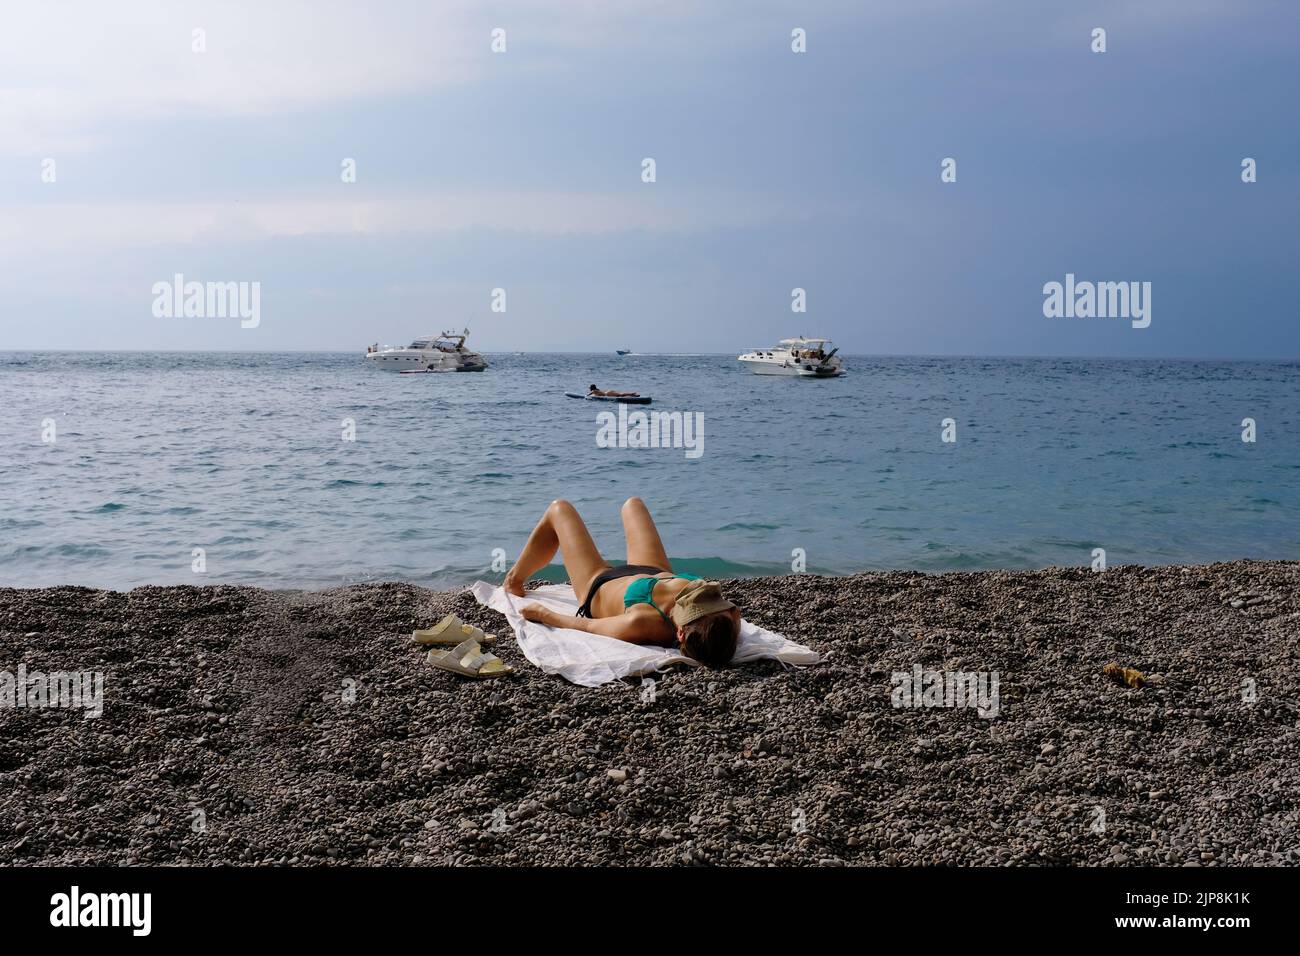 Una mujer tomando el sol en una playa pública en vico equense italia con barcos en el fondo. Foto de stock